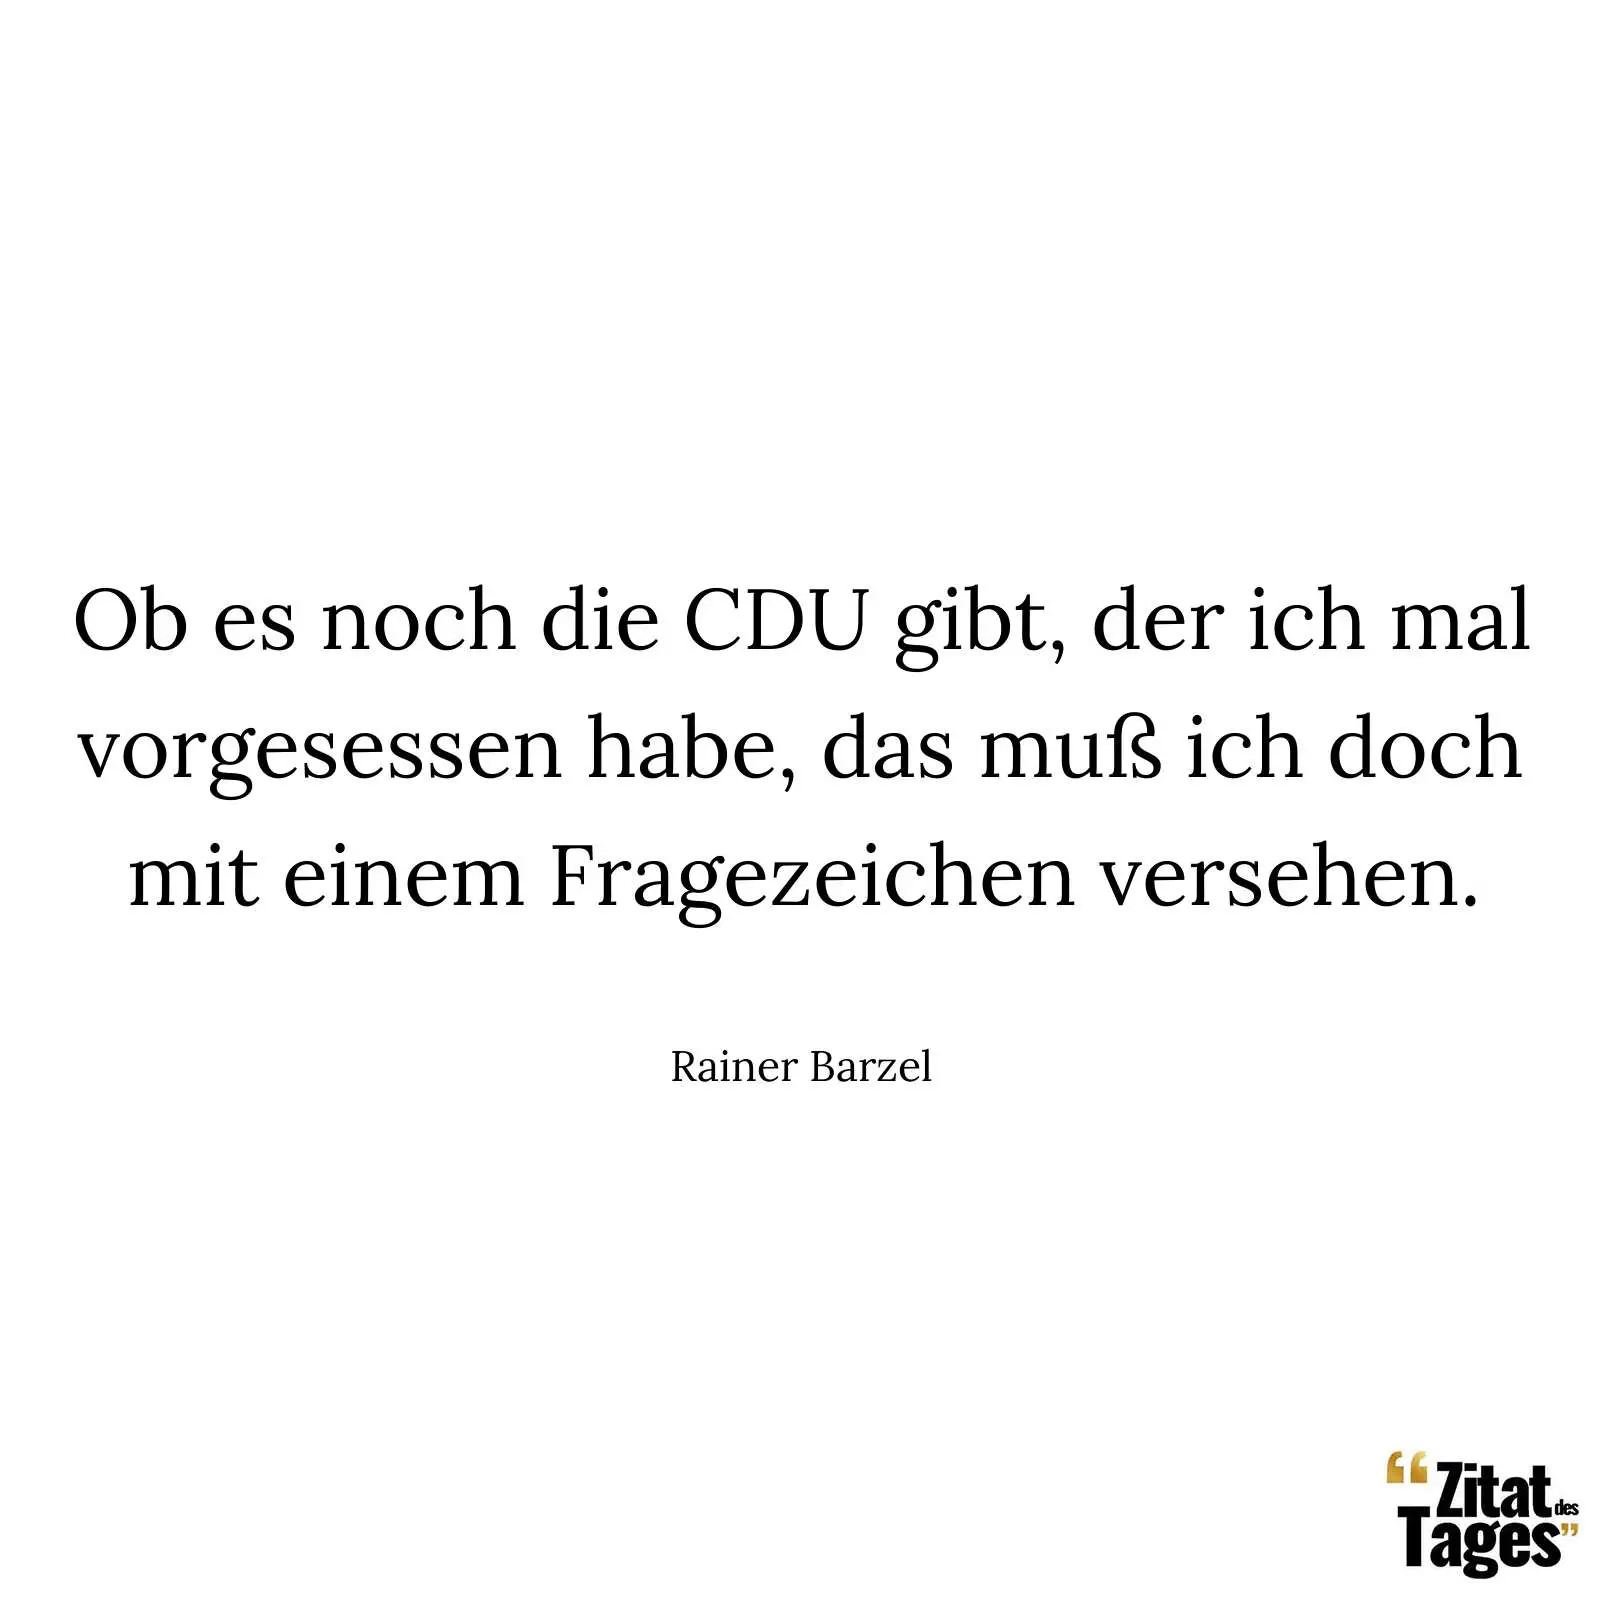 Ob es noch die CDU gibt, der ich mal vorgesessen habe, das muß ich doch mit einem Fragezeichen versehen. - Rainer Barzel